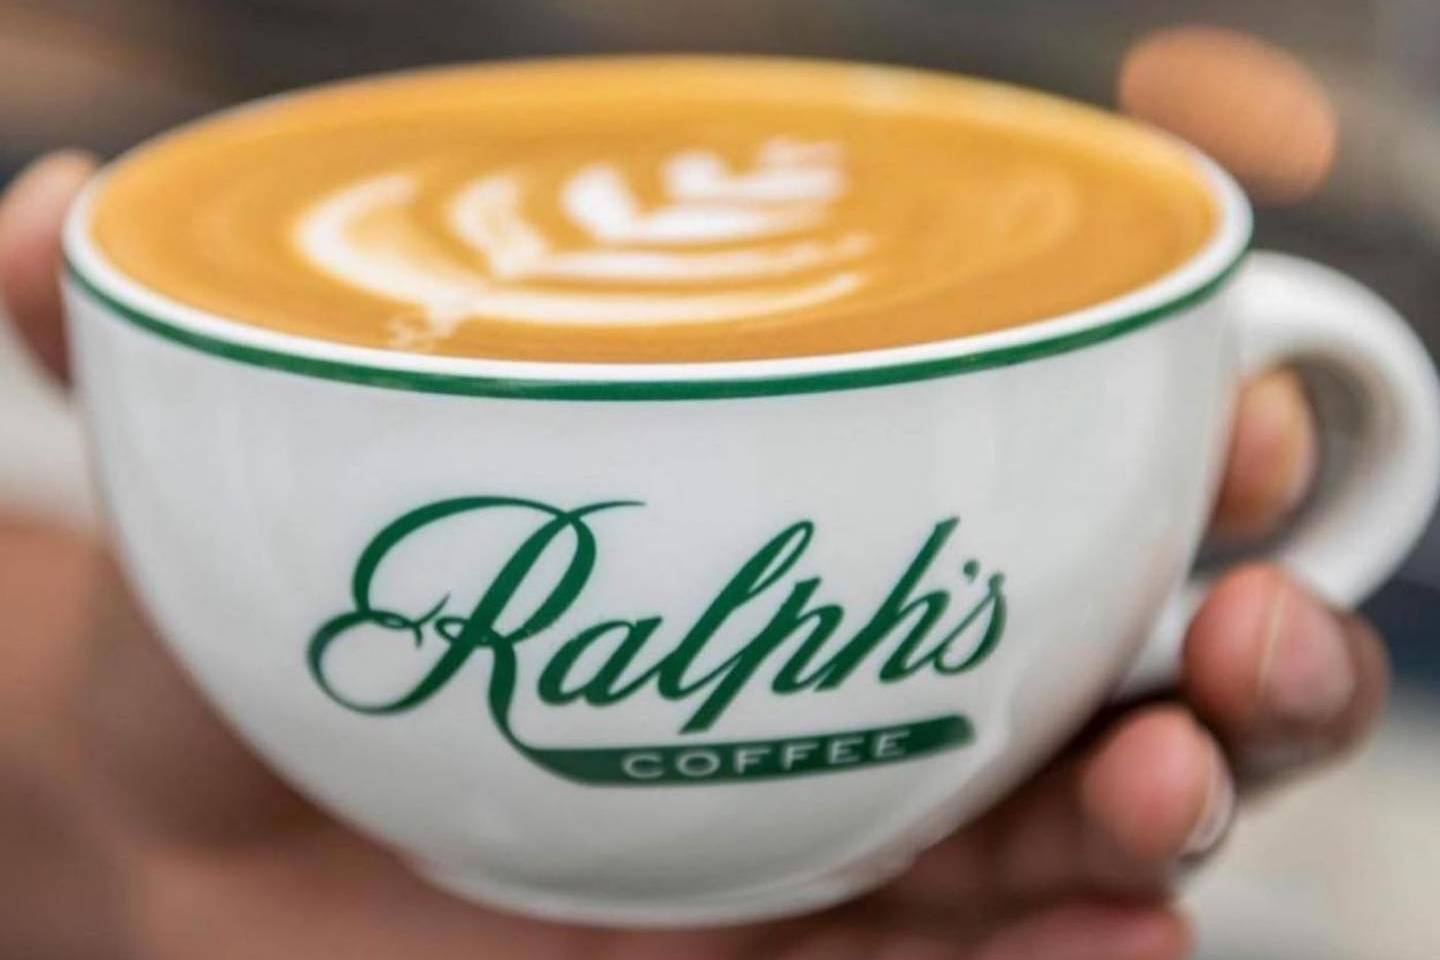 跟随 GQ 副主编一起享受一杯 Ralph’s Coffee